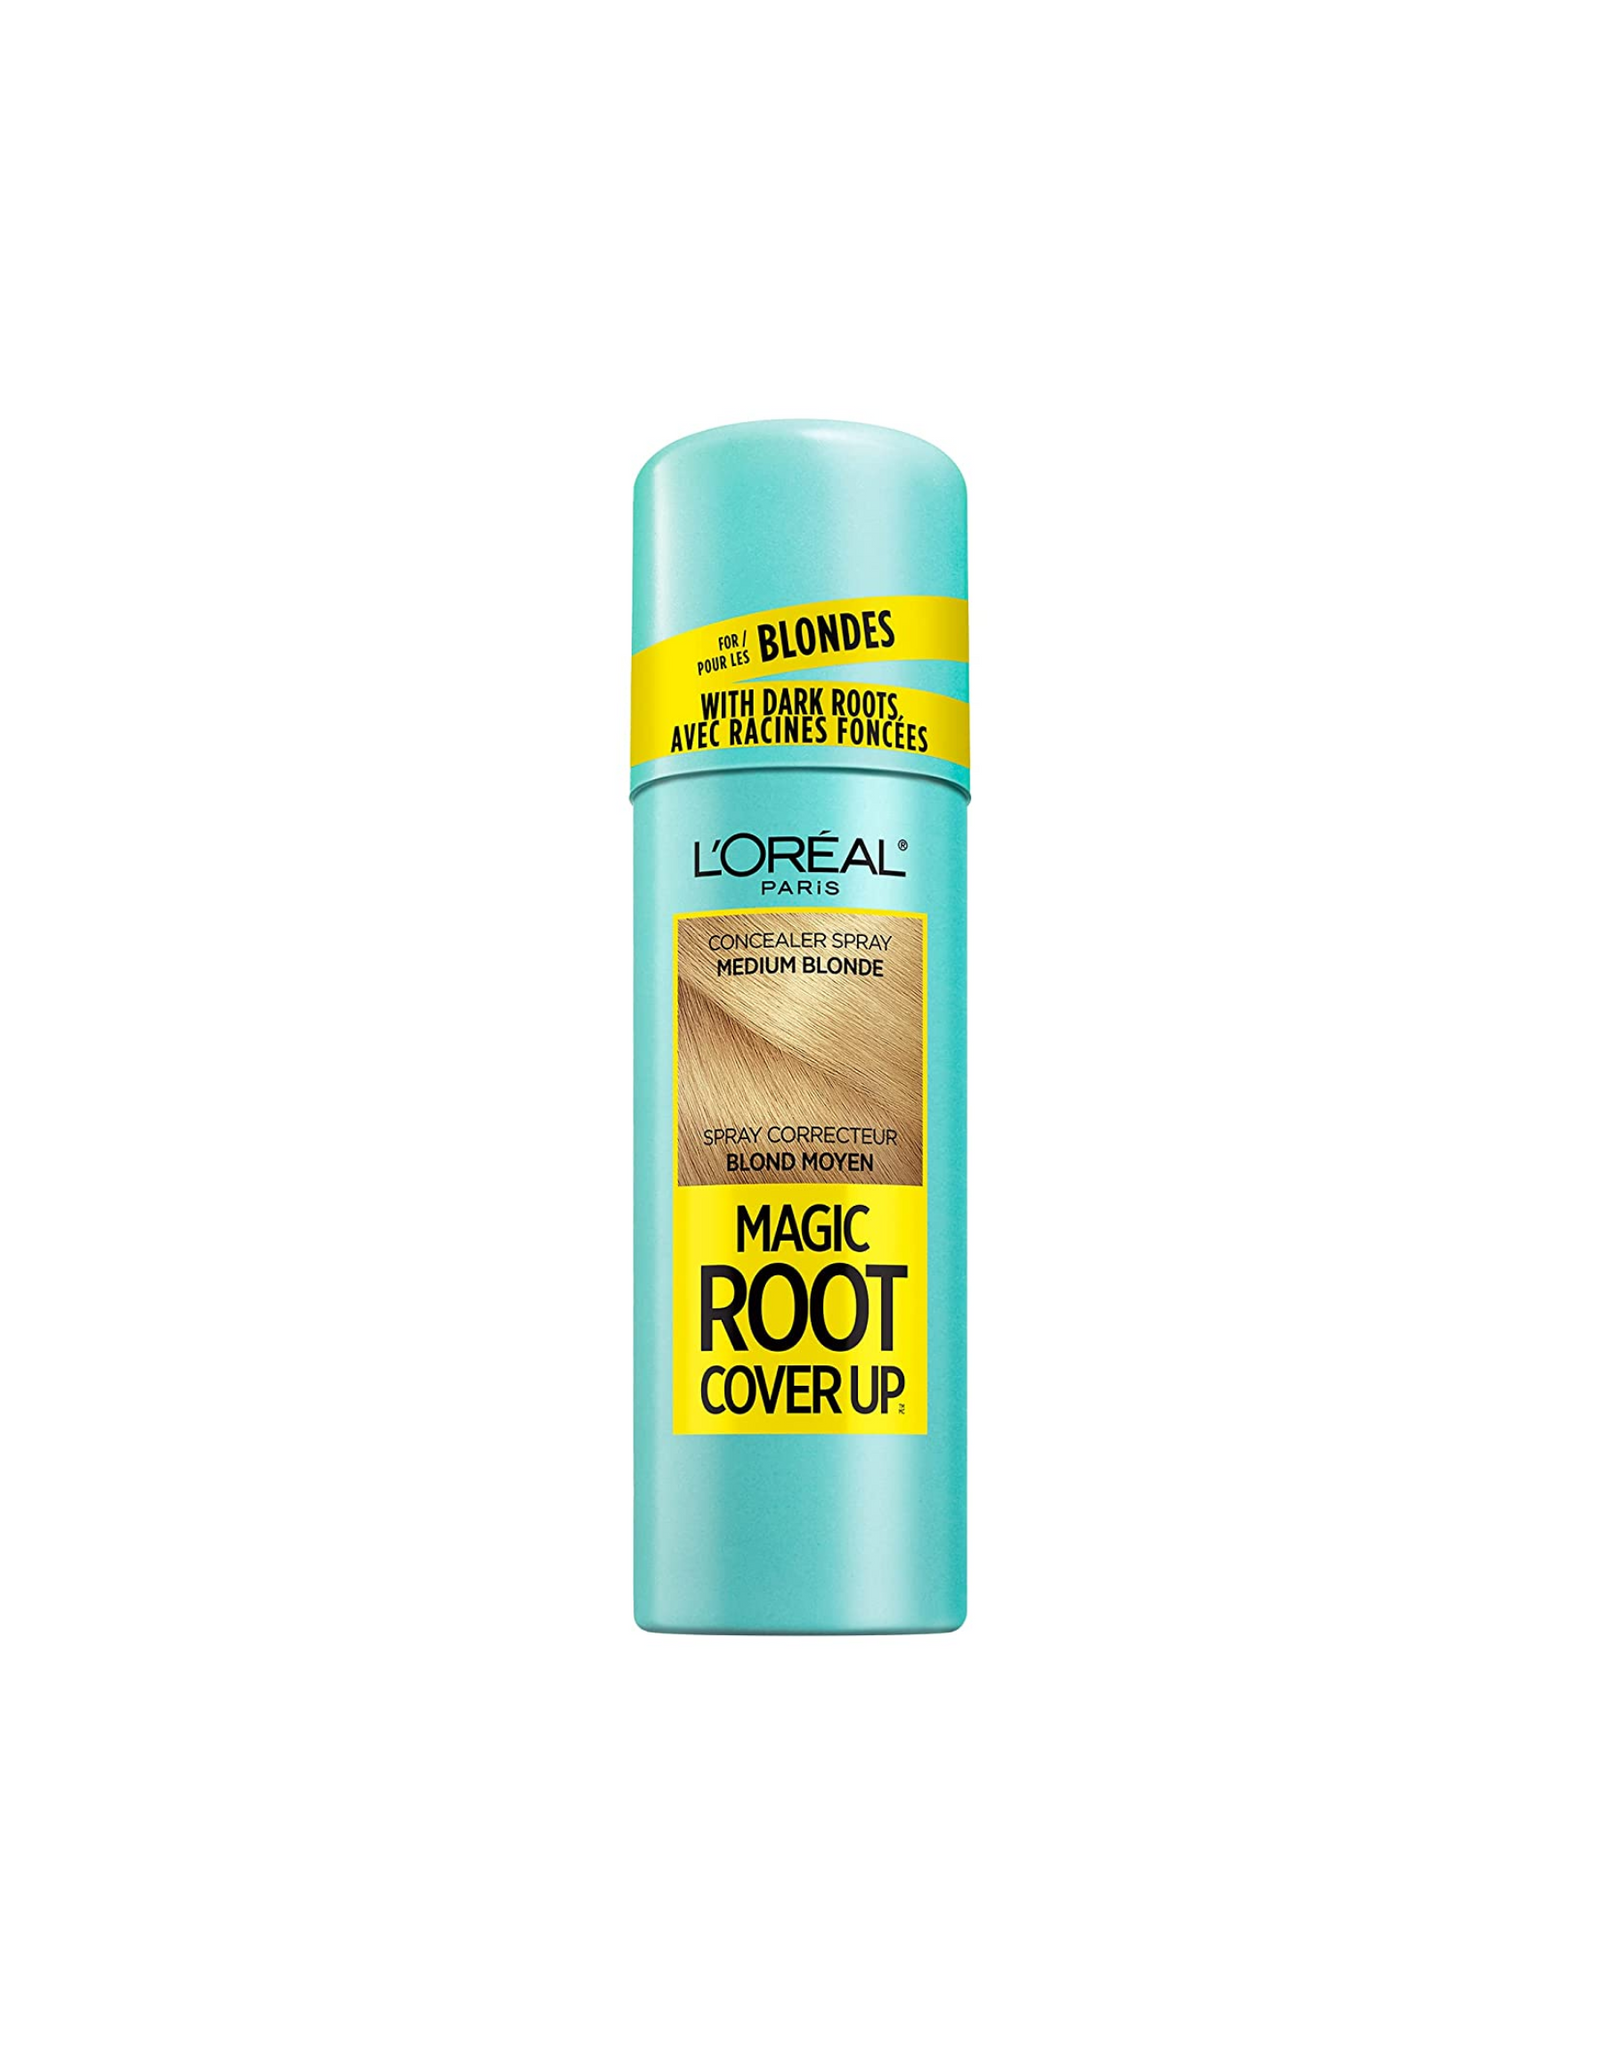 L'Oreal Paris Magic Root Cover Up Concealer Spray, Medium Blonde, 2 oz